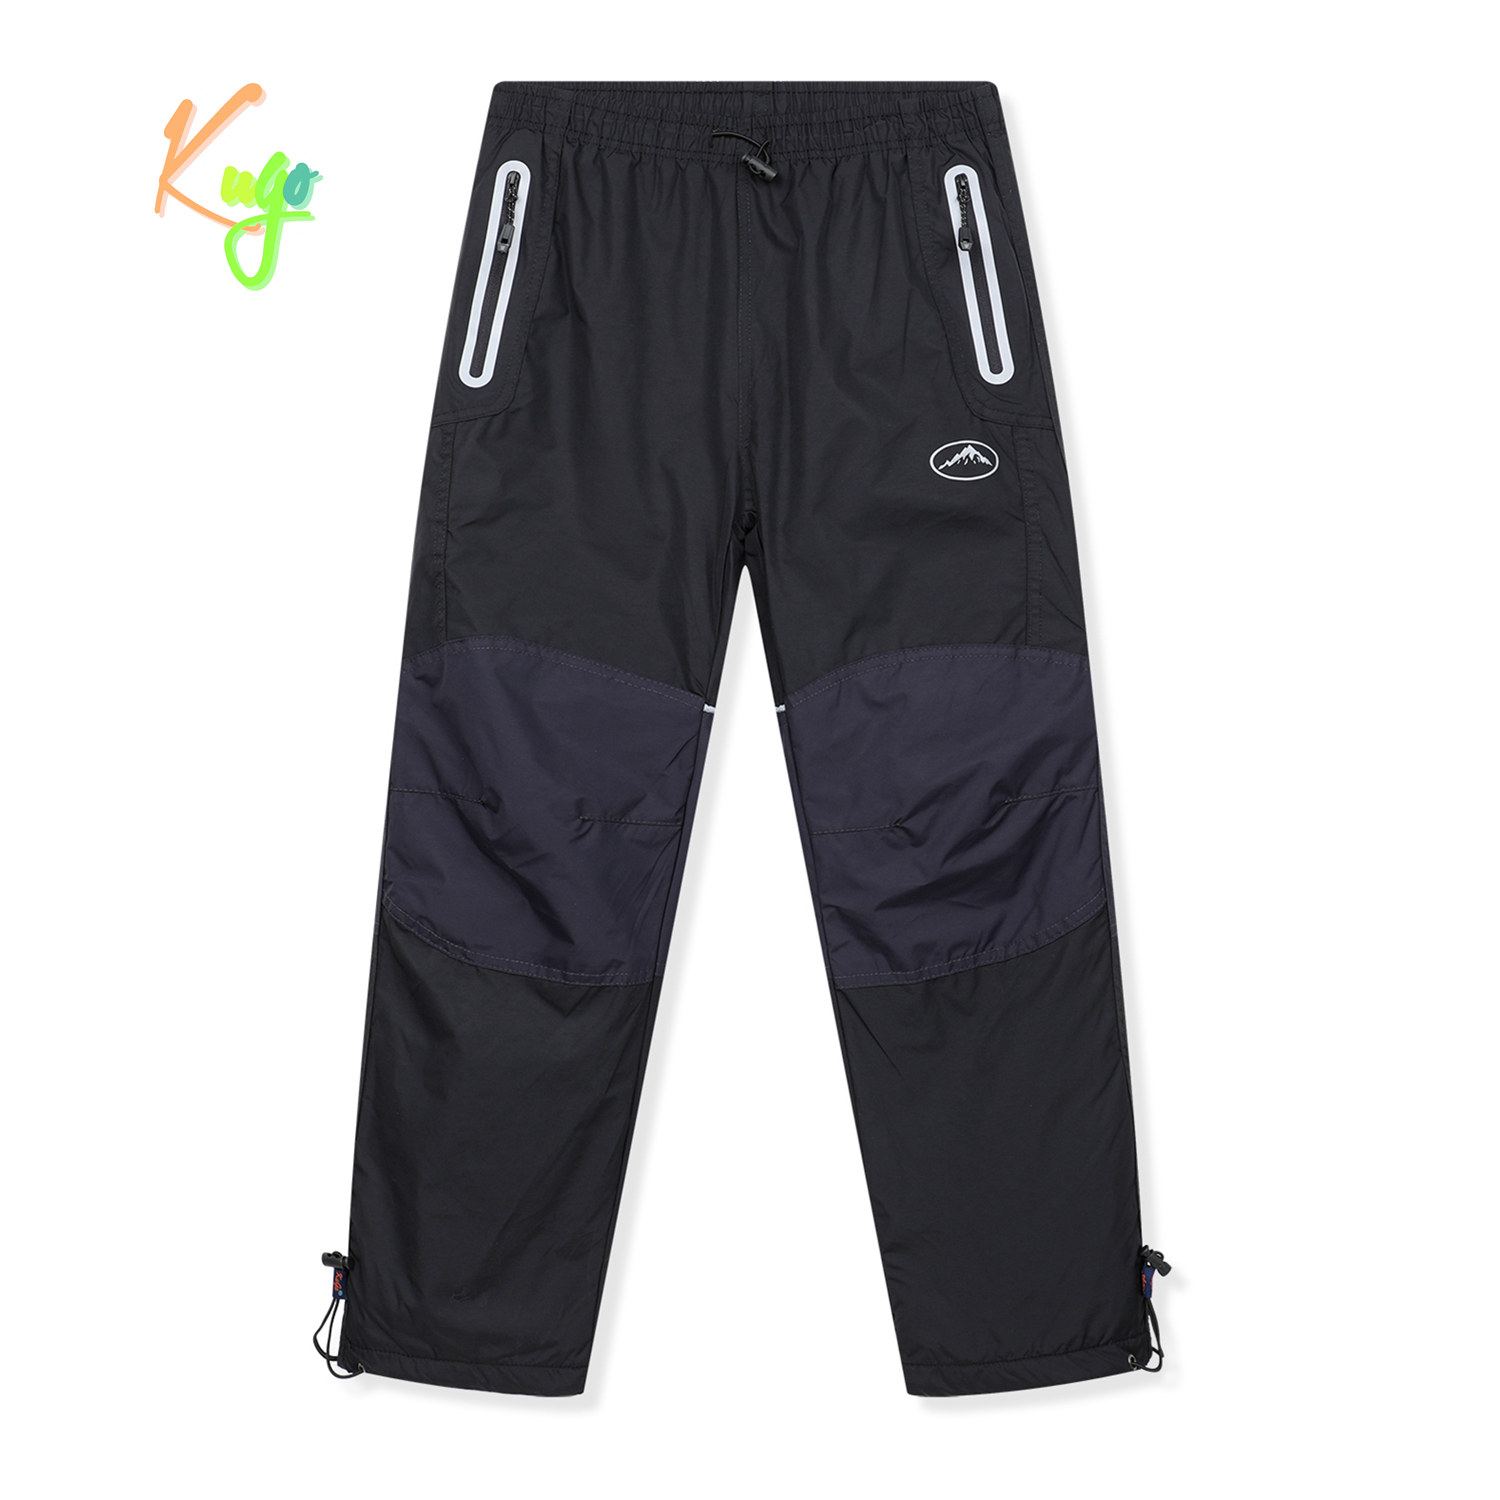 Chlapecké šusťákové kalhoty, zateplené - KUGO DK8237, černá / černé zipy Barva: Černá, Velikost: 134